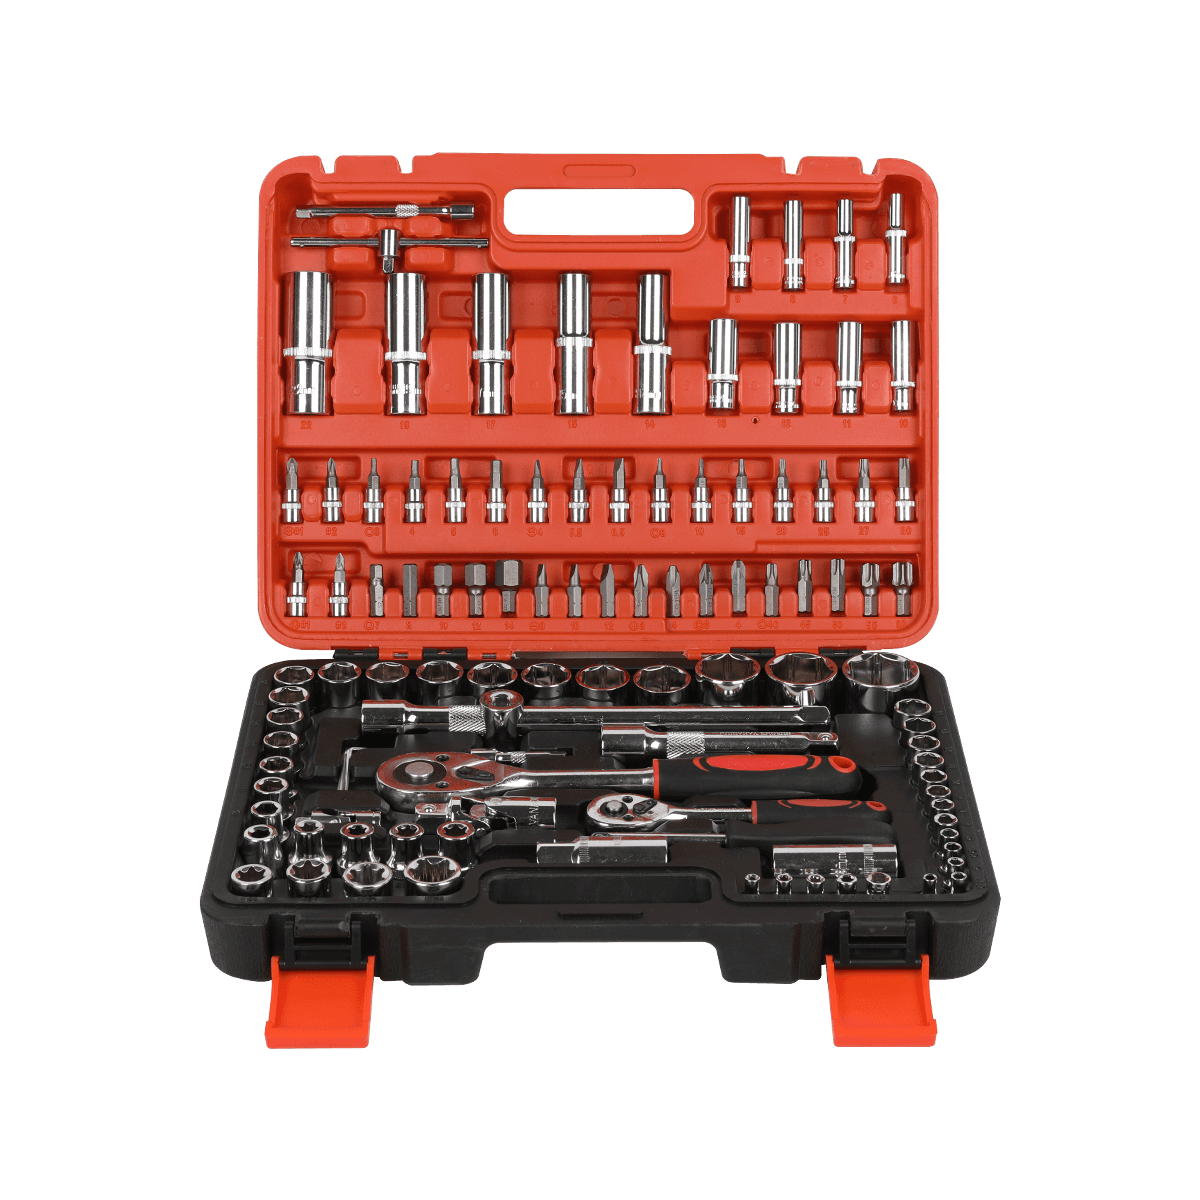 108 styks hardwarefastgørelseselementer Mobilreparationshåndværktøjssæt Generelt husholdningsværktøjssæt